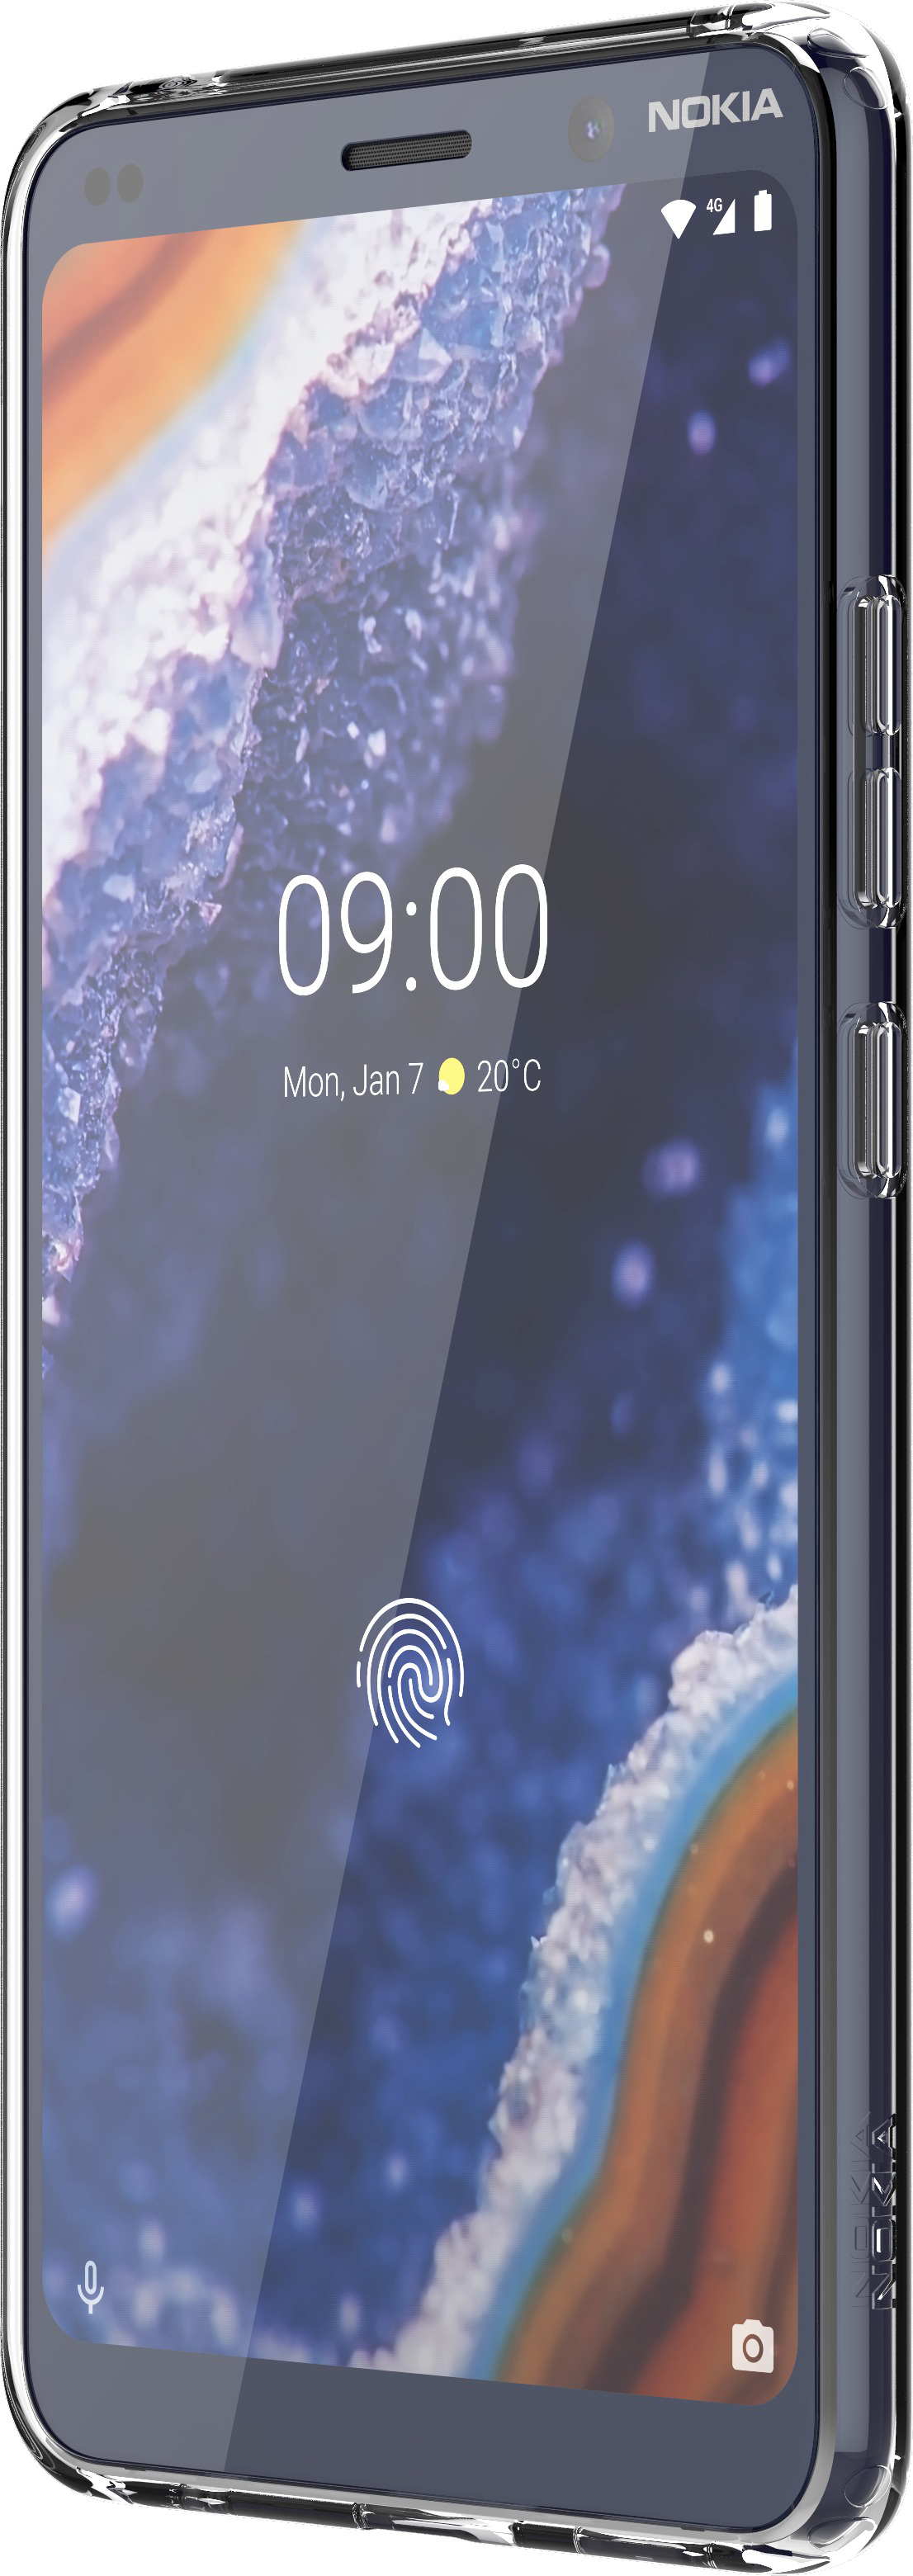 NOKIA Premium CC-190, 9 Transparent Case Nokia, PureView, Backcover, Clear